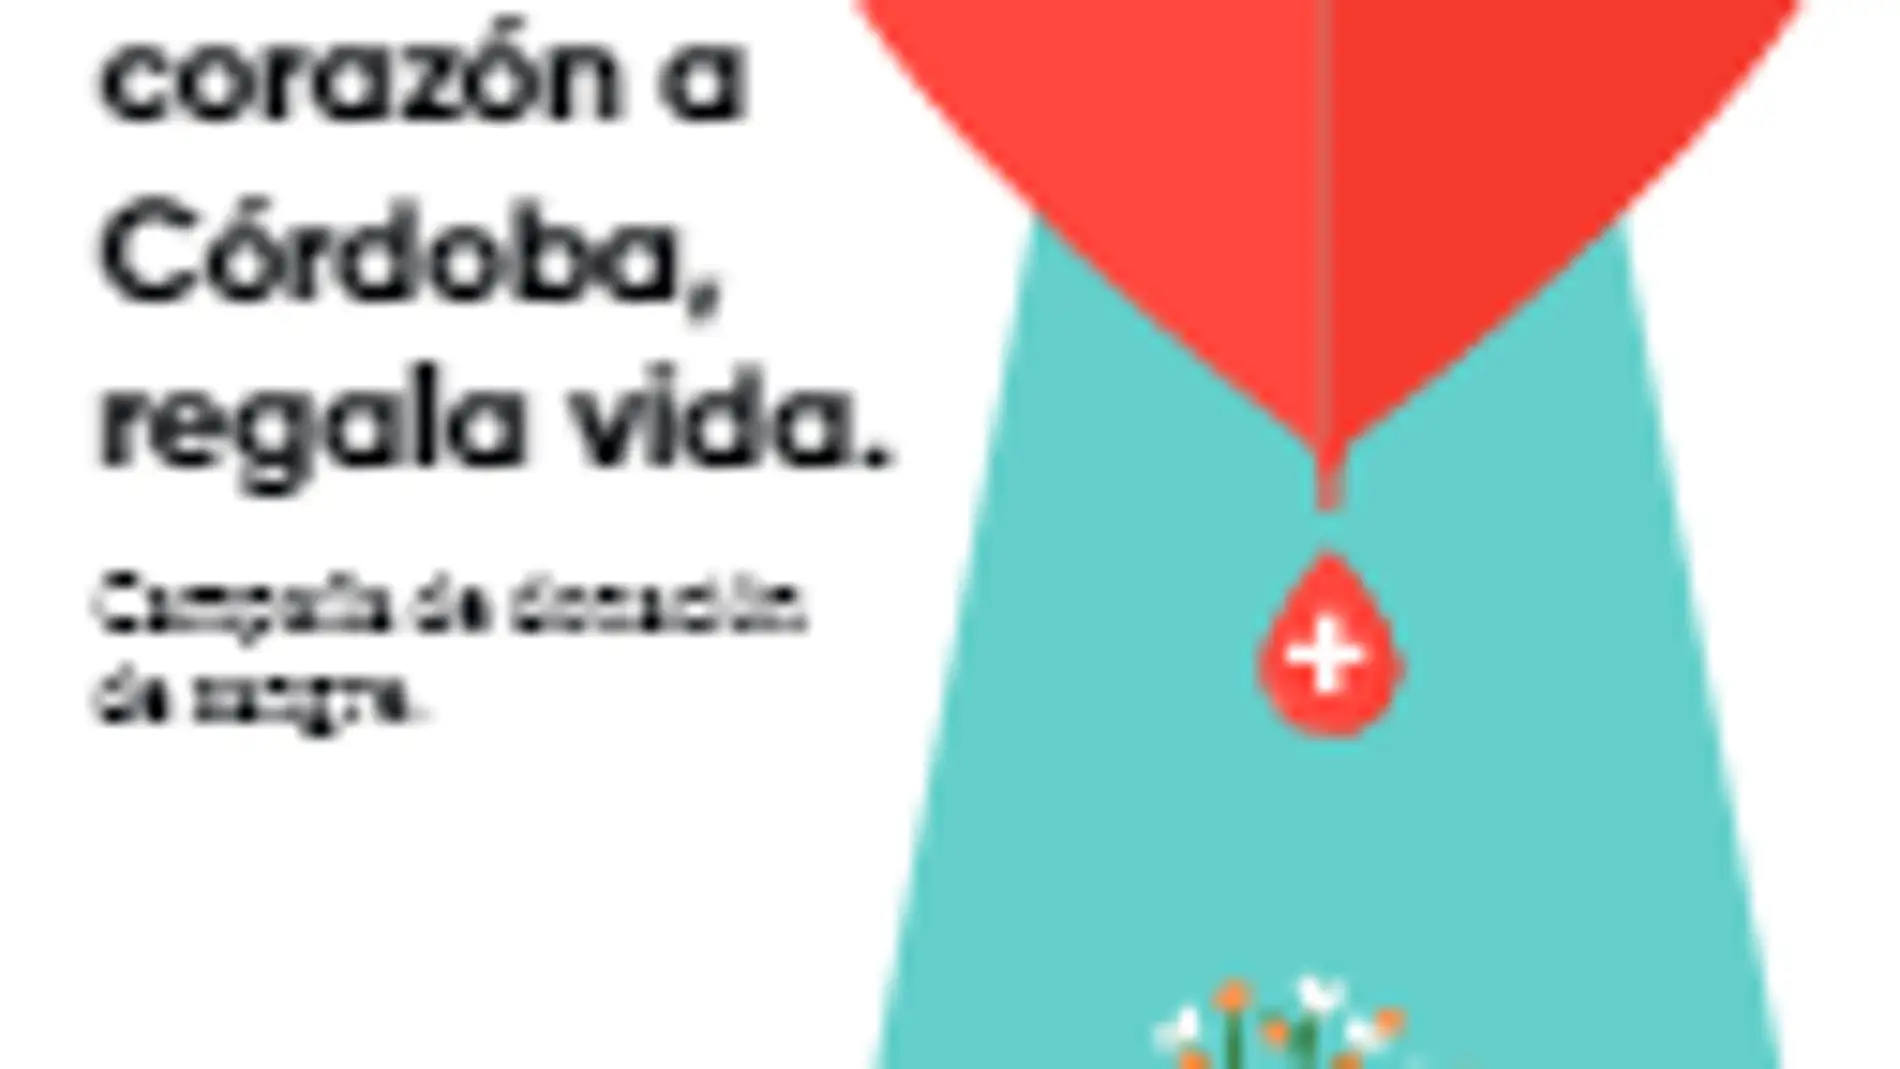 ‘Ponle corazón a Córdoba, regala vida’ 